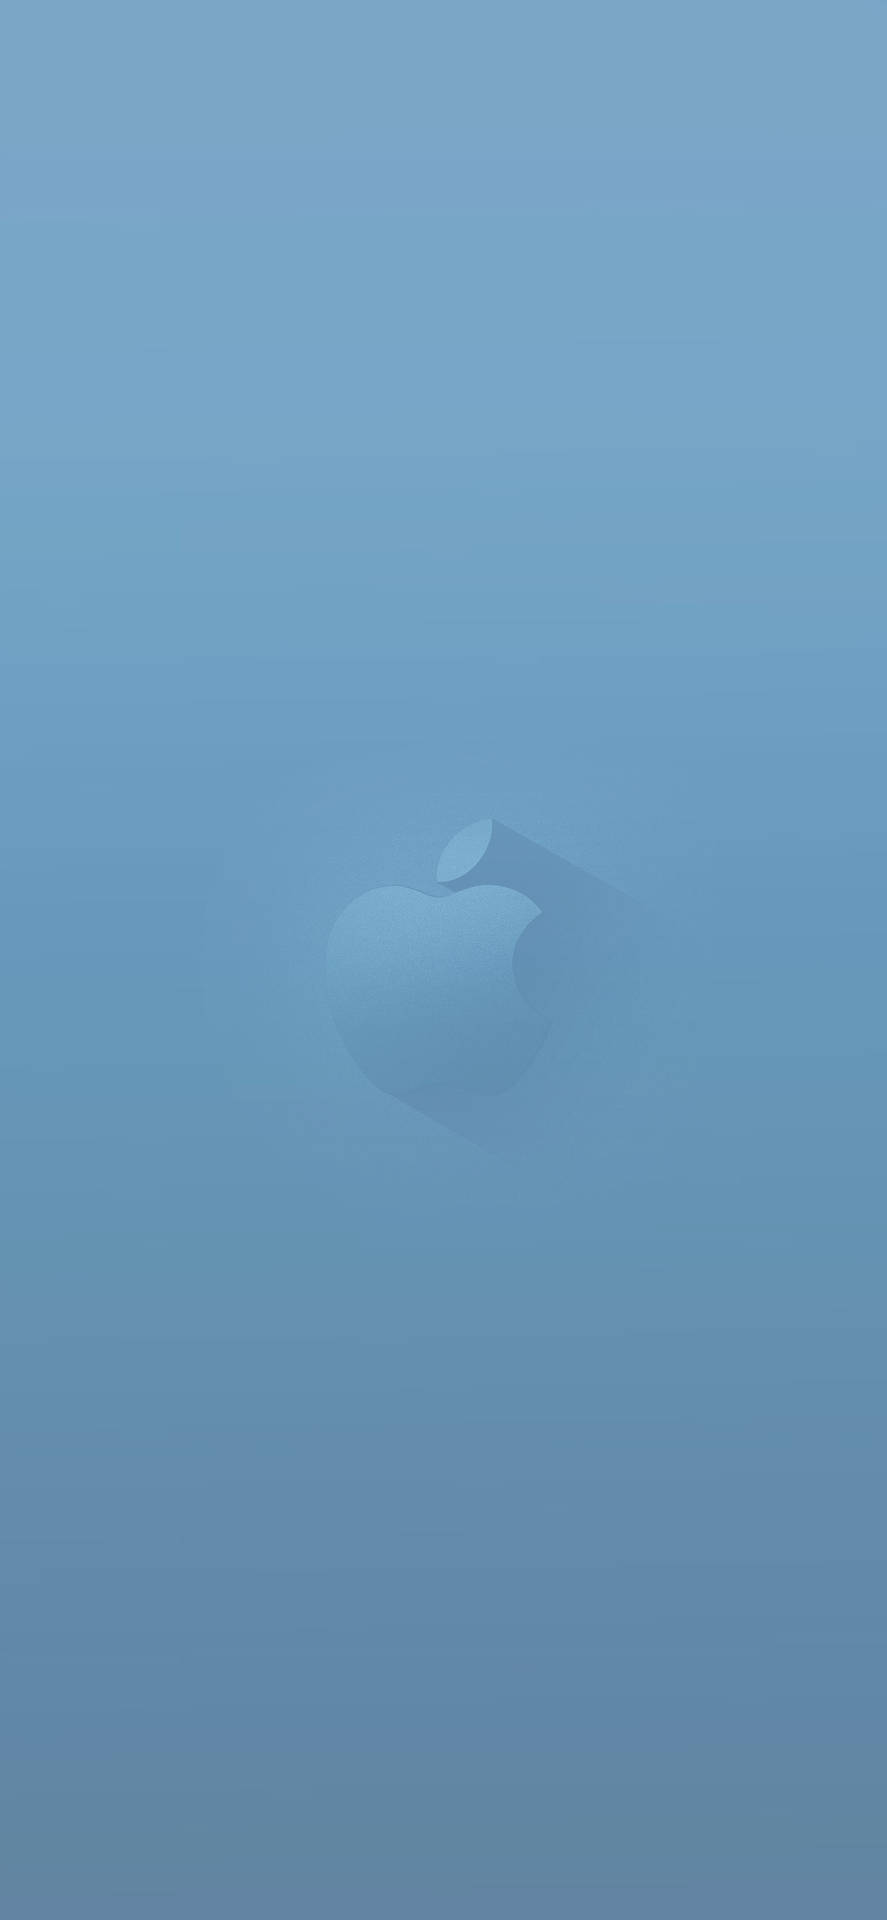 Vibrant Blue Apple Logo Wallpaper